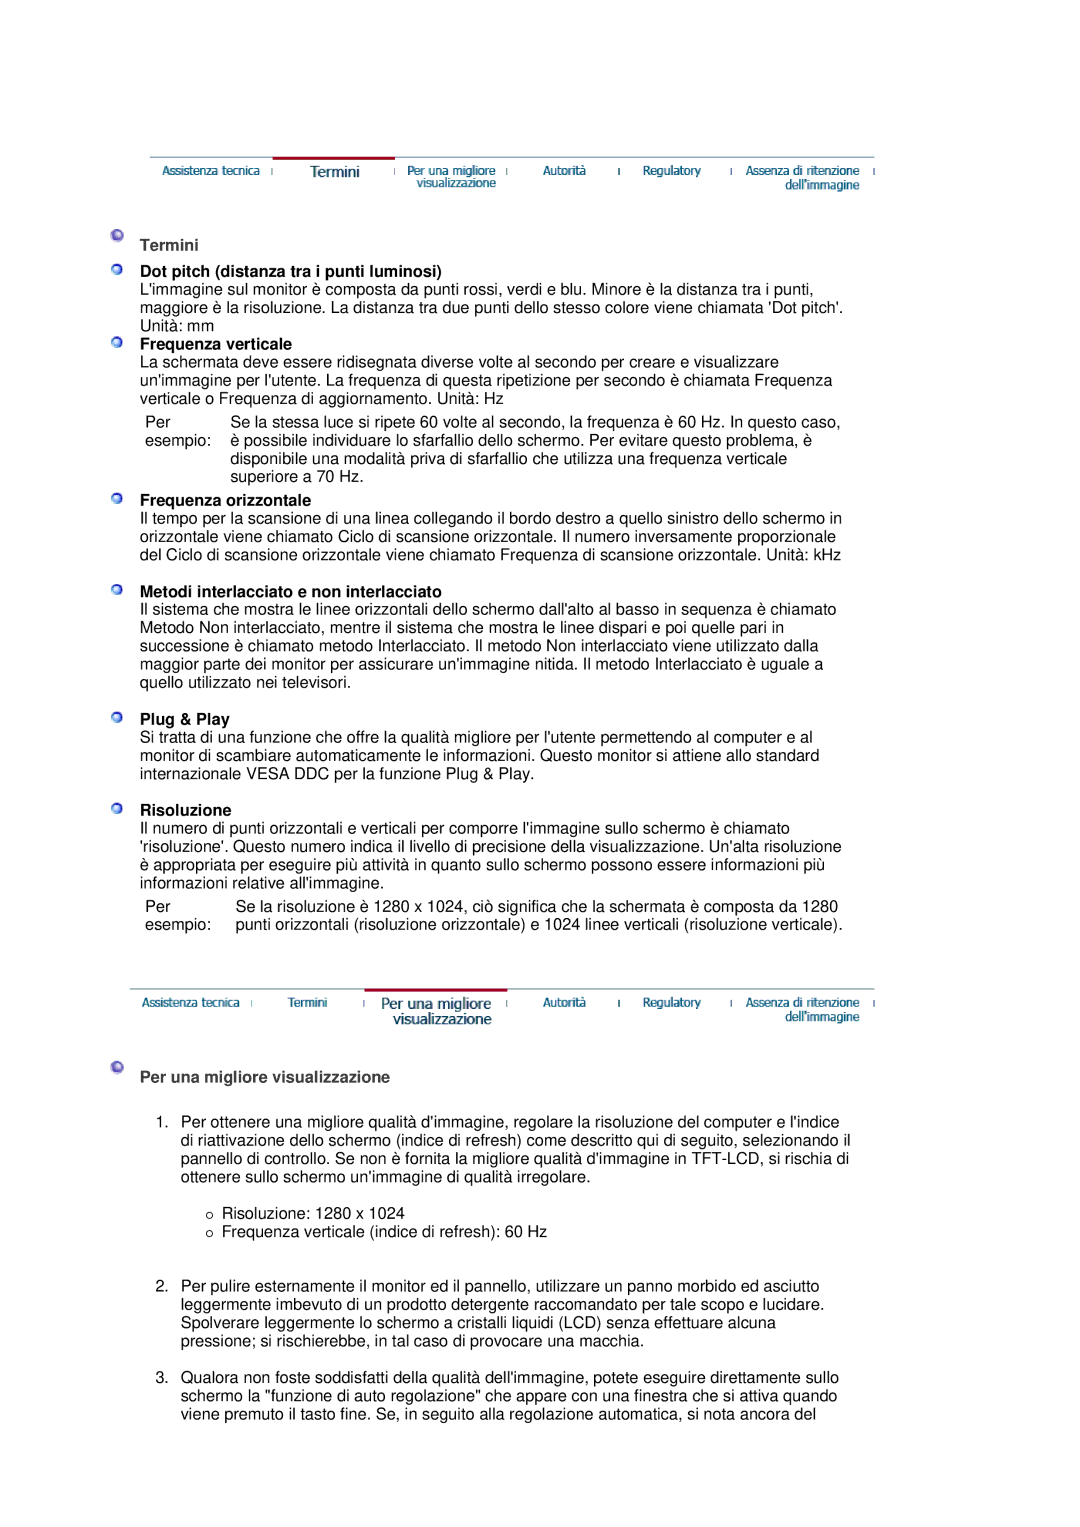 Samsung MJ17CSKS/EDC manual Termini, Per una migliore visualizzazione 